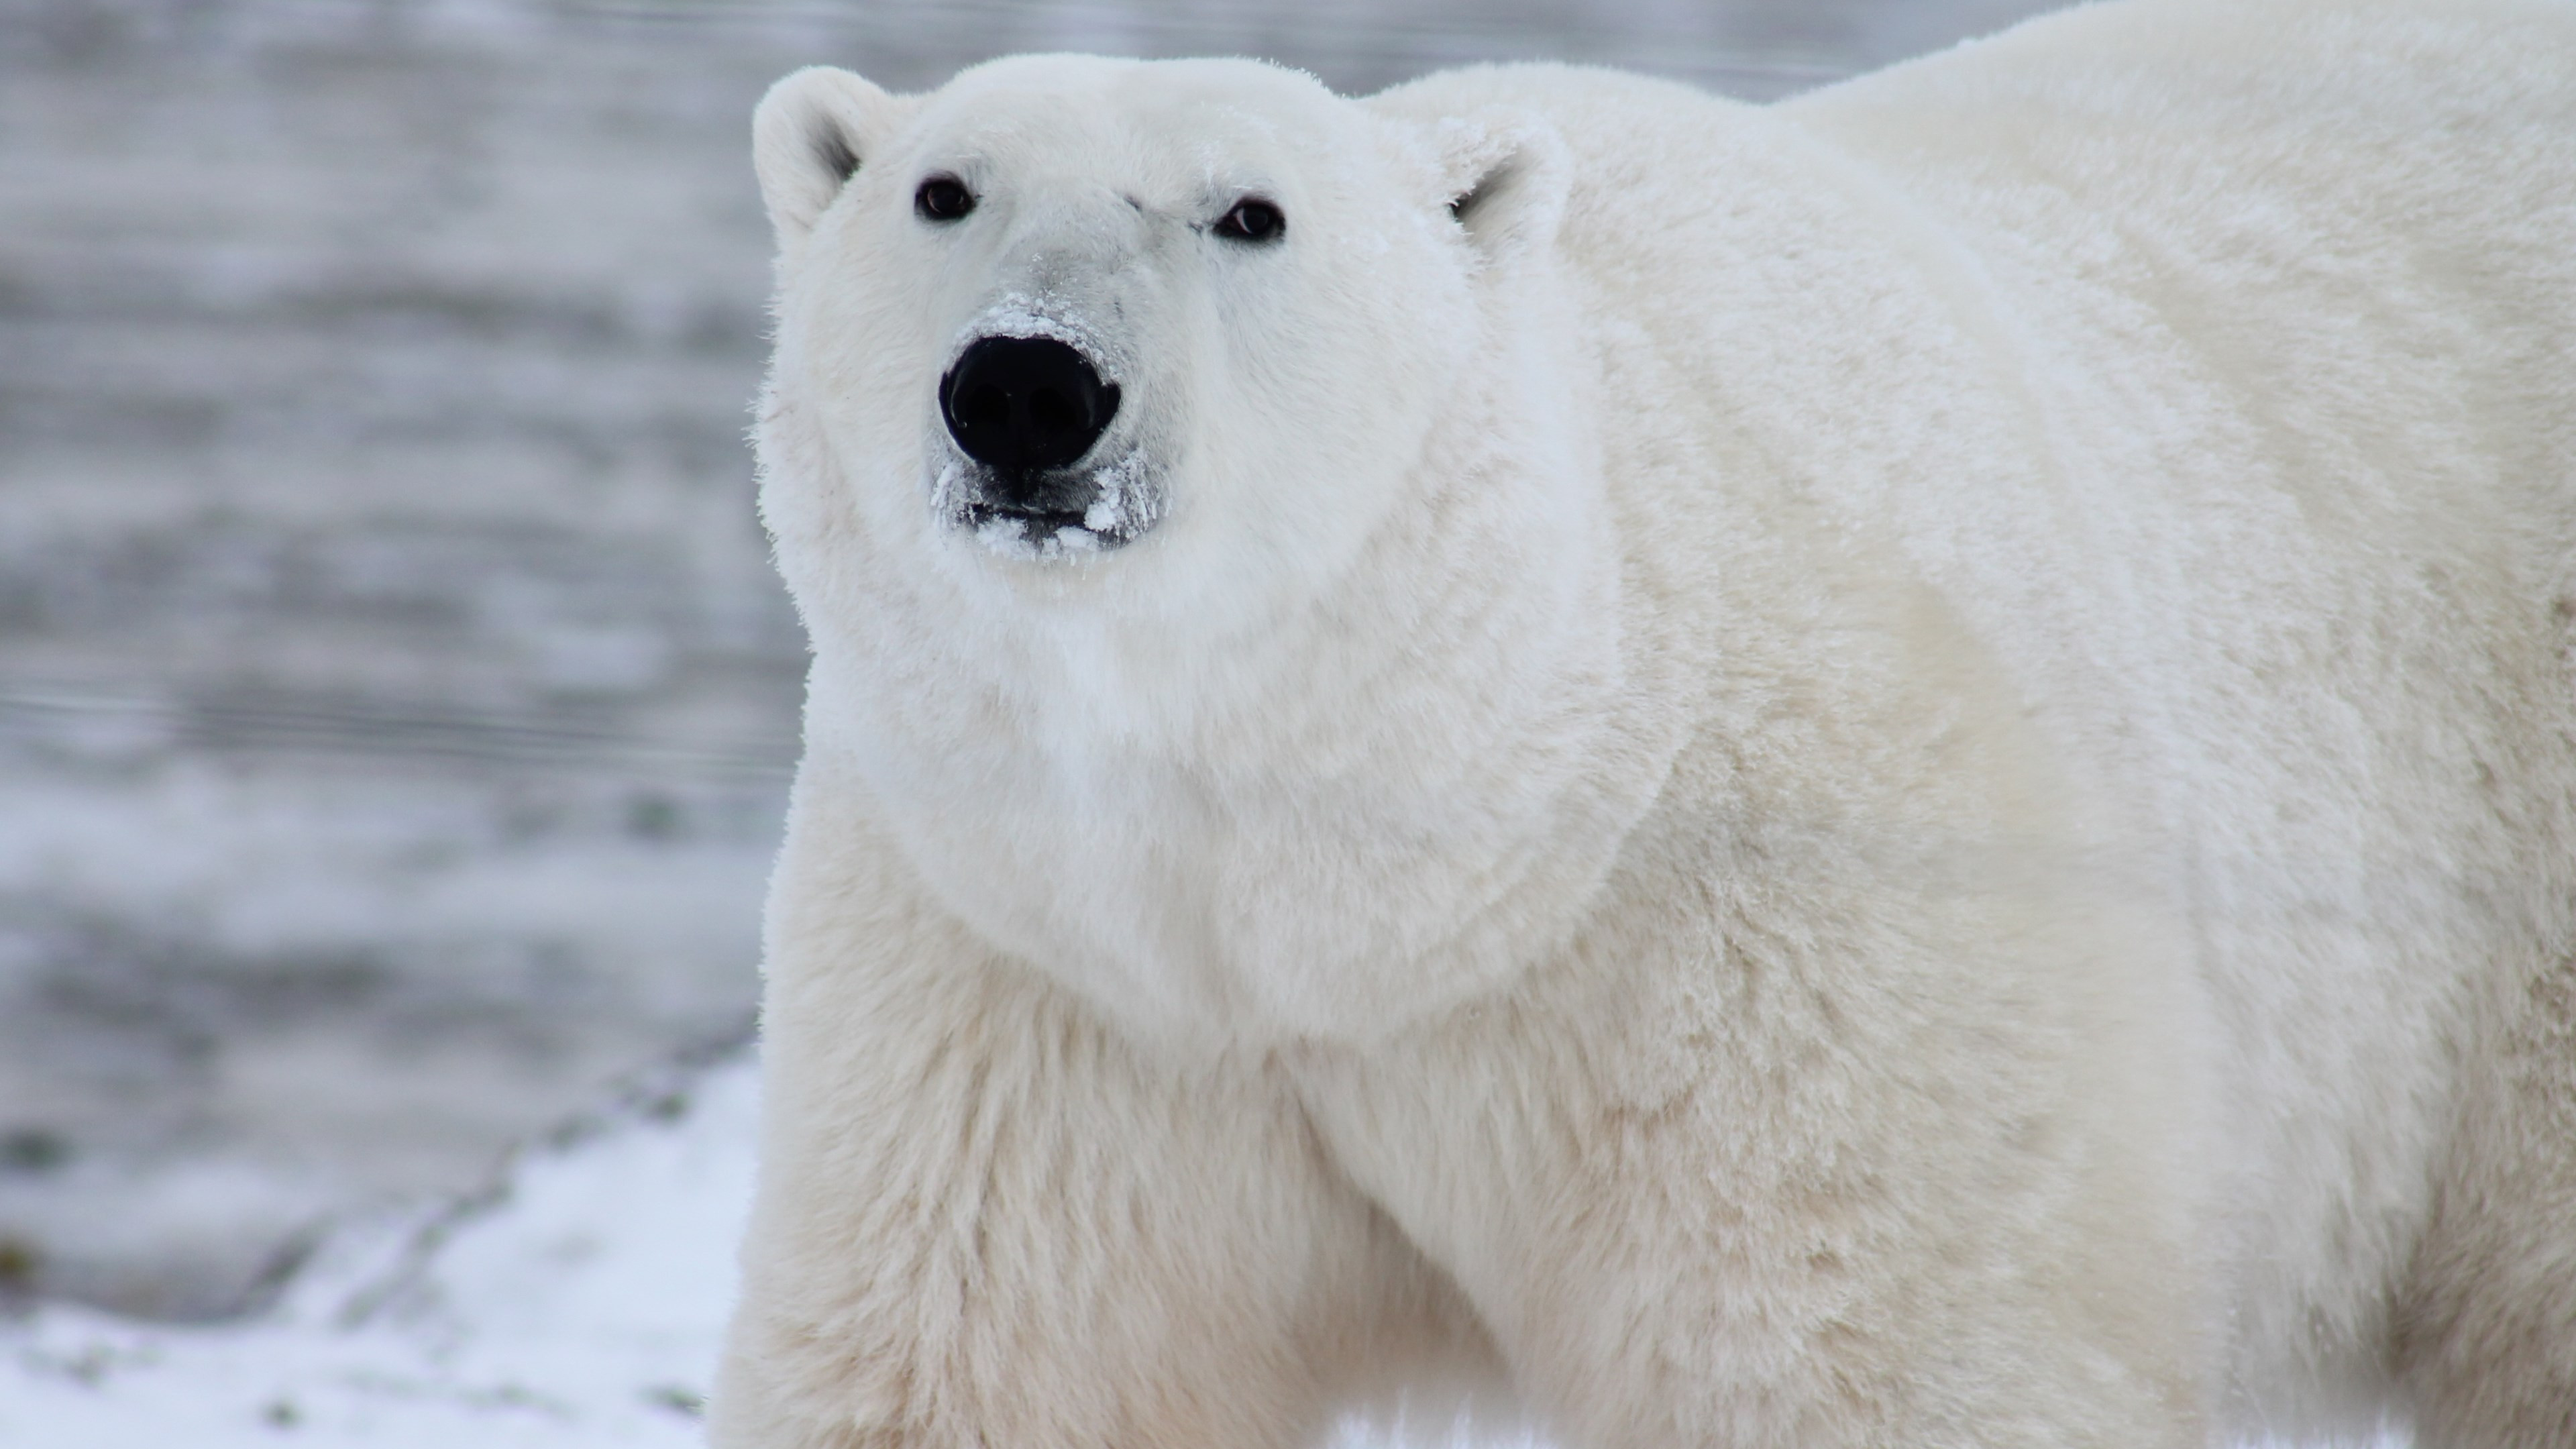 Polar bear in his environment wallpaper 3840x2160